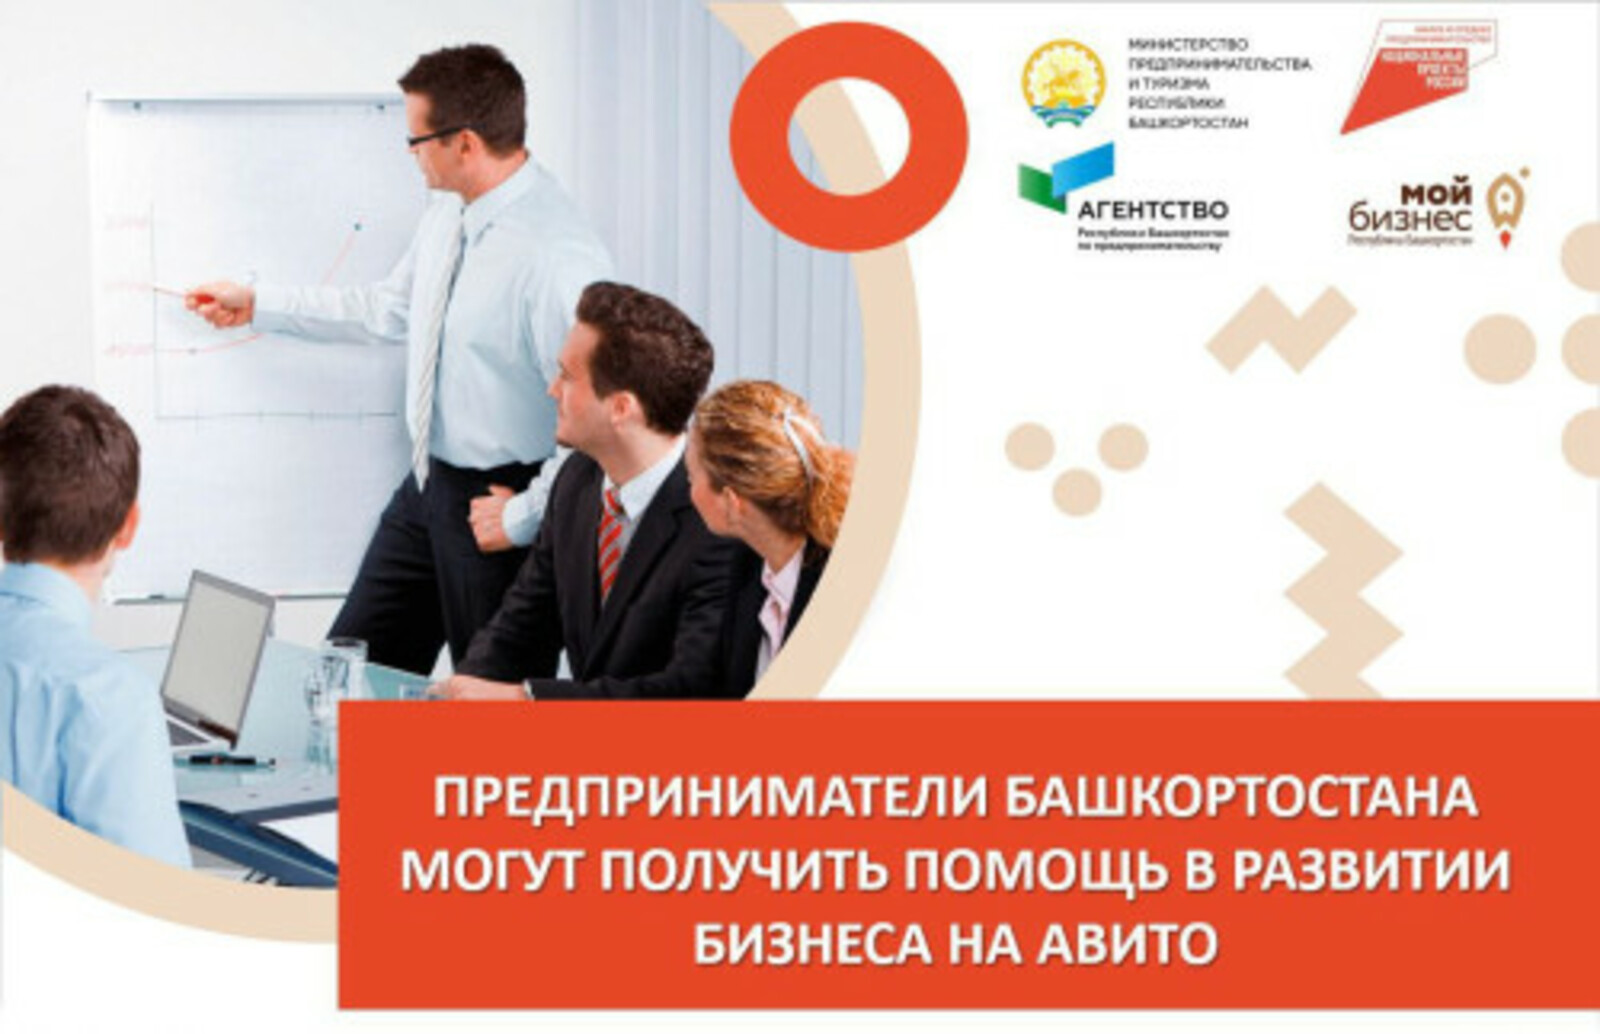 Авито окажет помощь лредпринимателям Башкортостана в развитии бизнеса